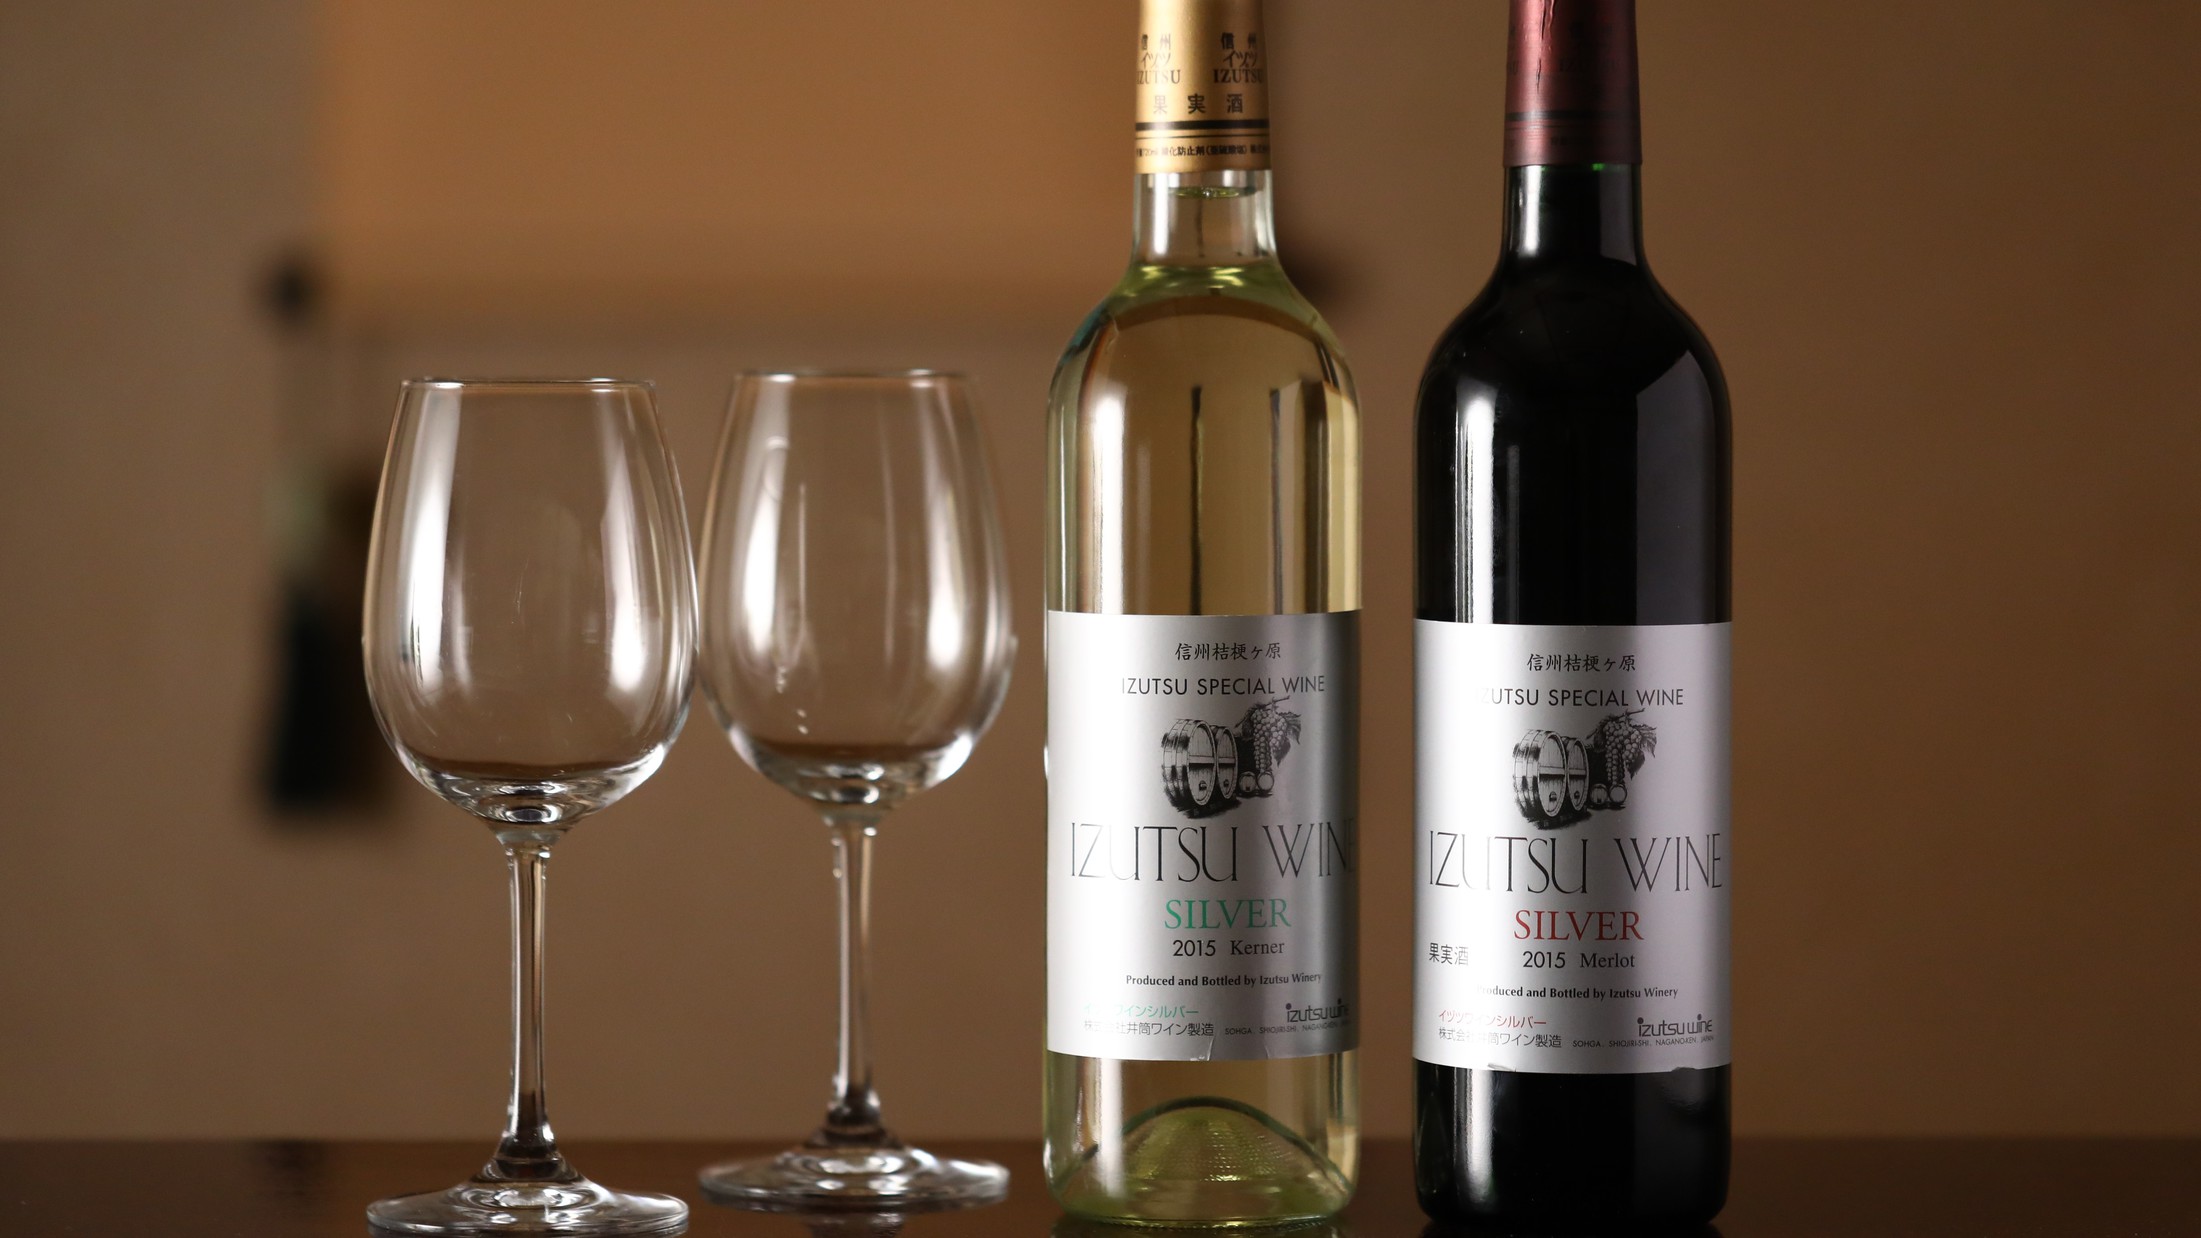 【お飲み物】「井筒ワイン」。信州ワインの中でも人気の高い銘柄。県内で栽培収穫された品種を醸造